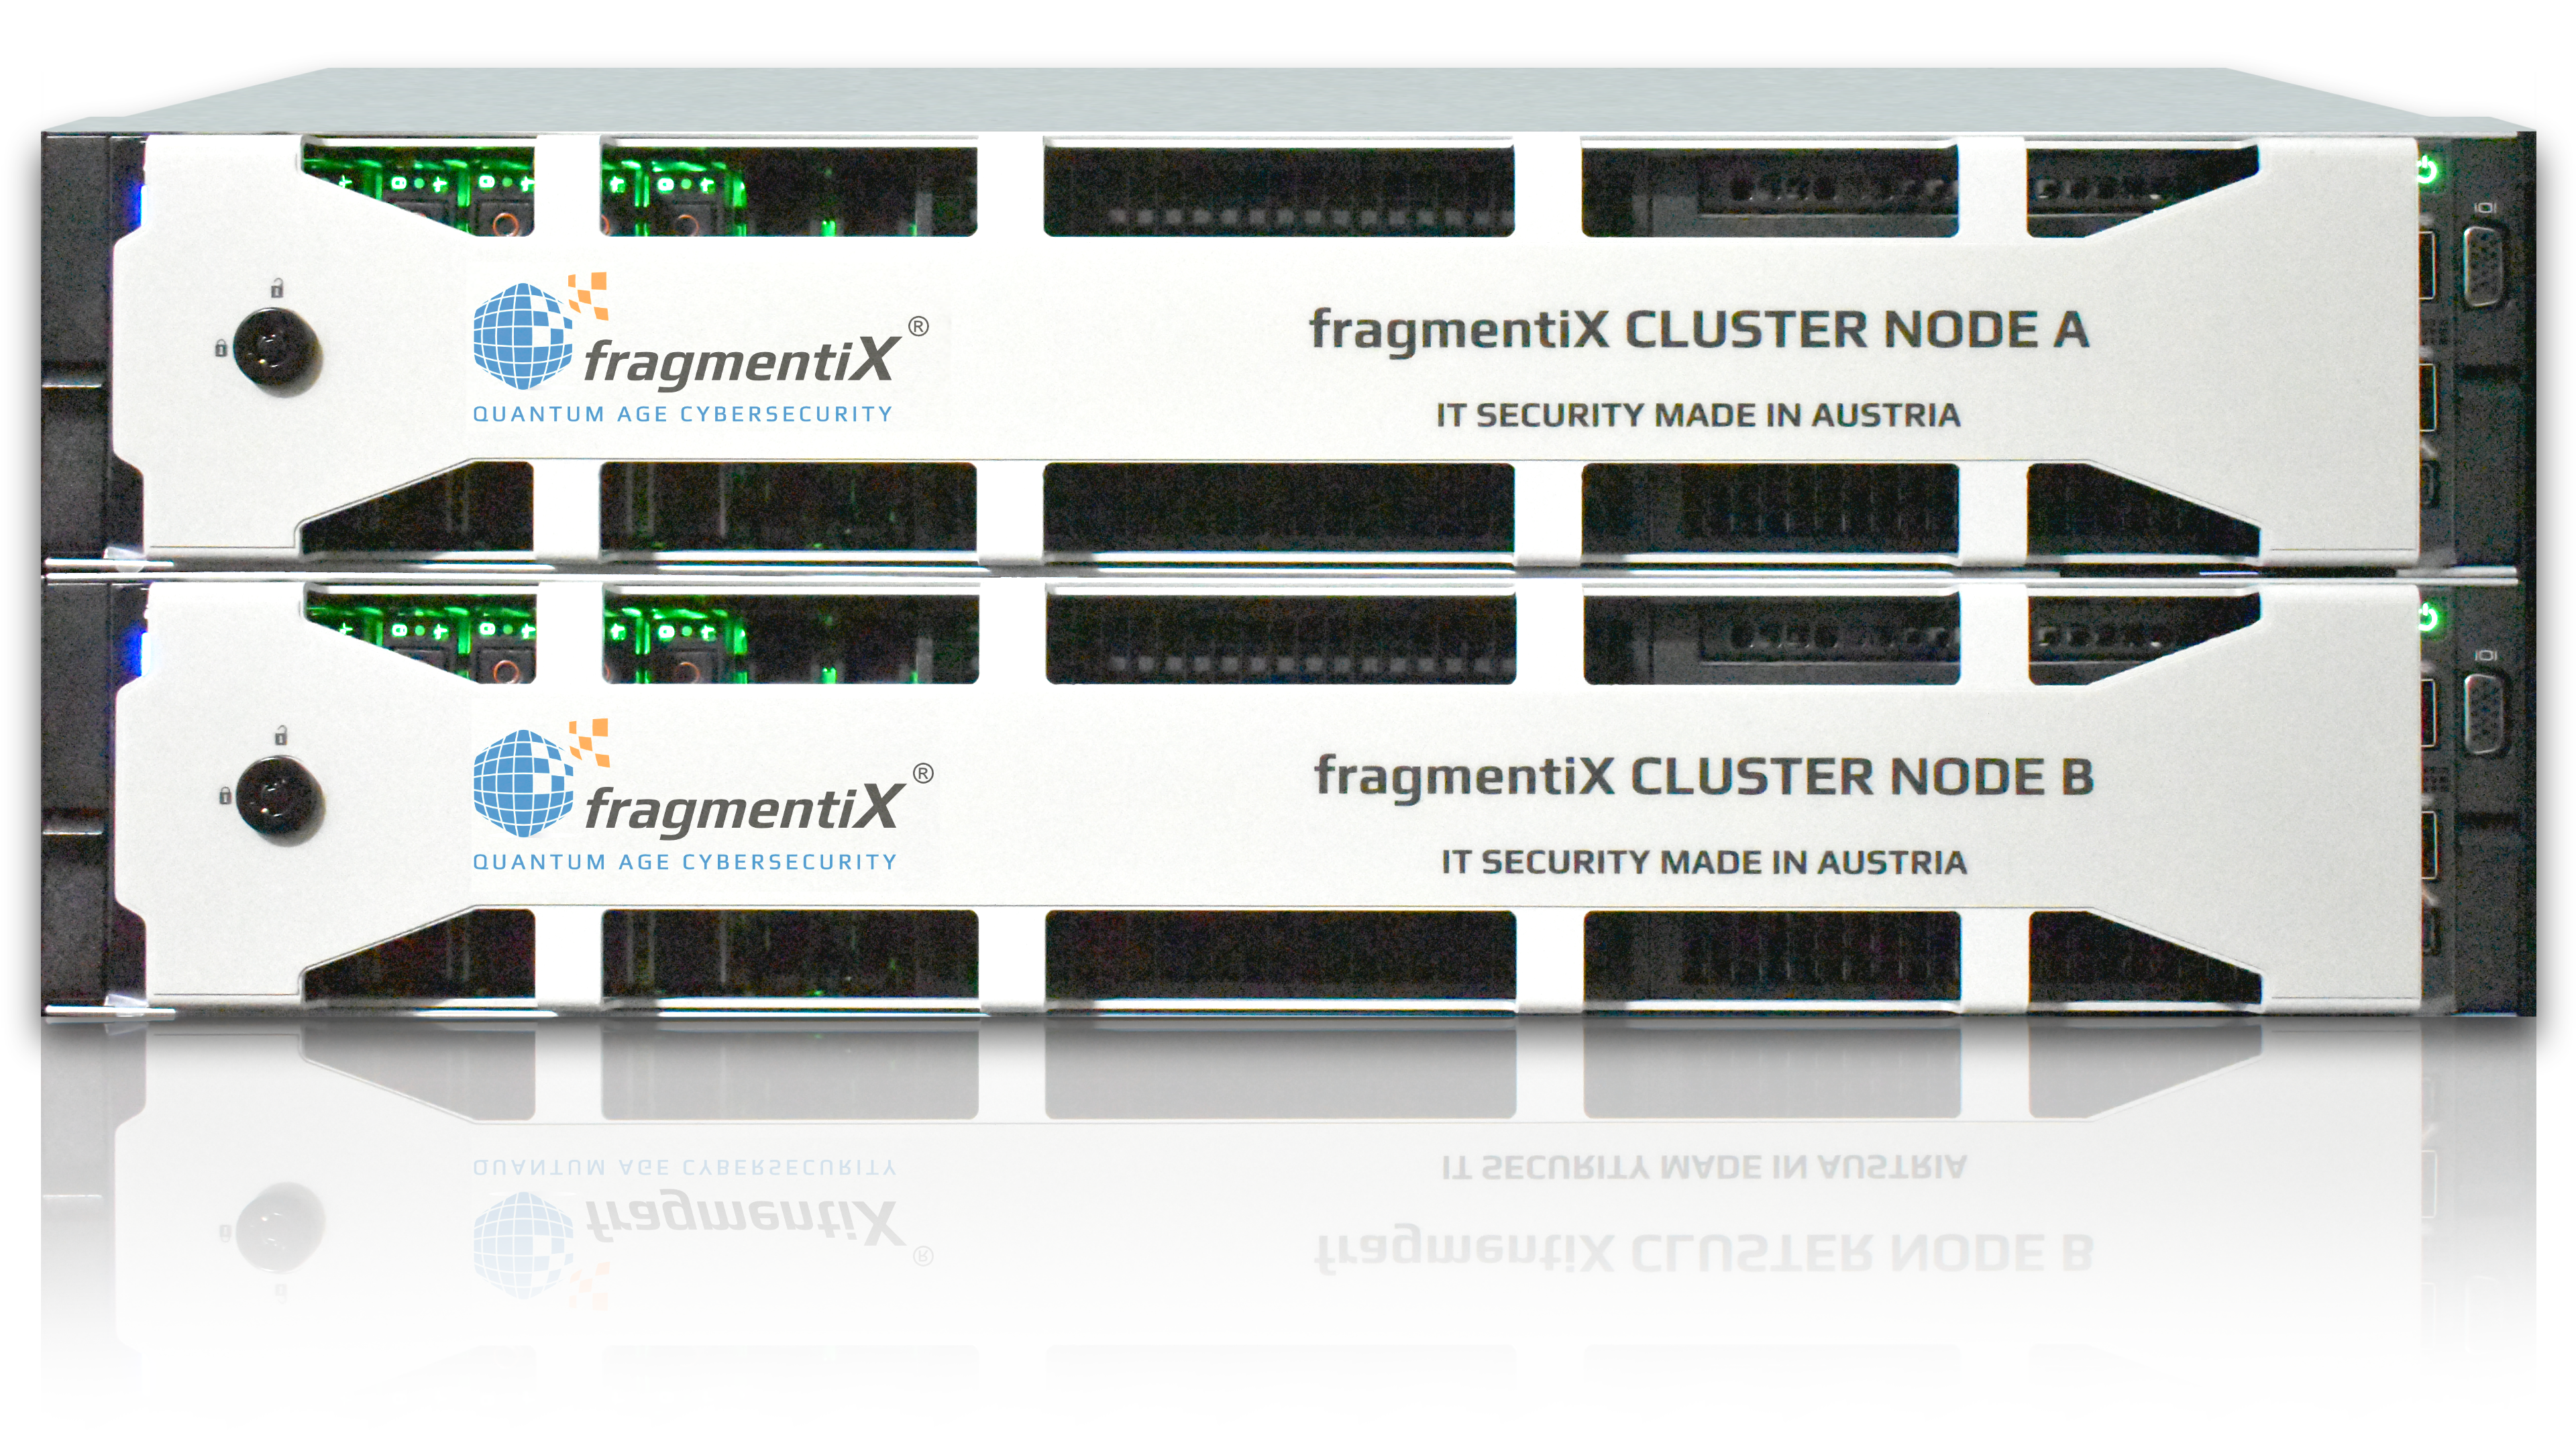 fragmentiX CLUSTER Nó A & B